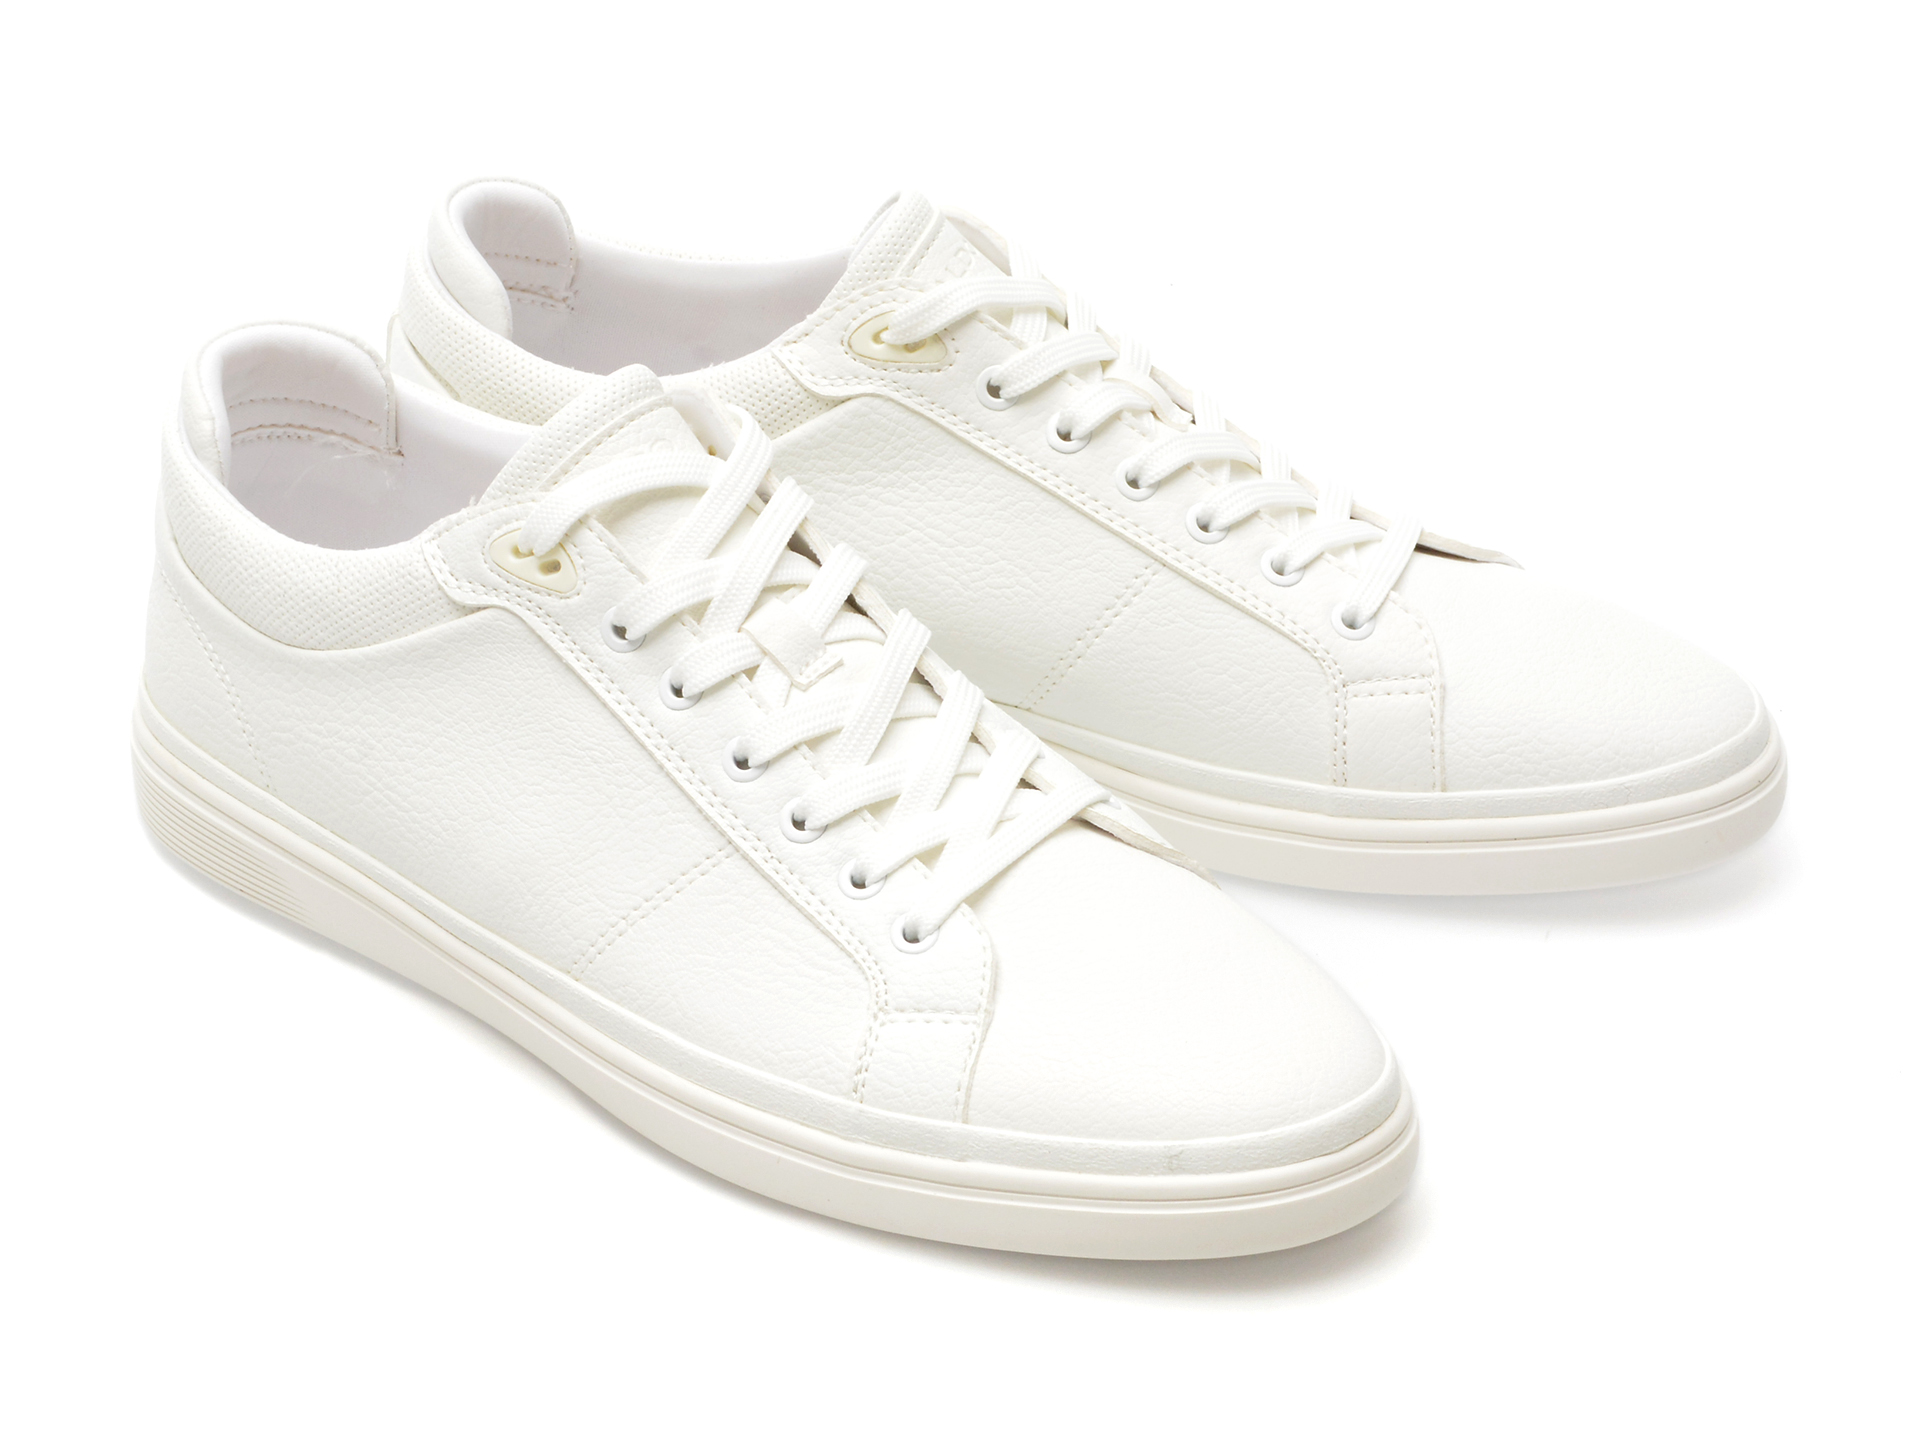 Poze Pantofi ALDO albi, 13451152, din piele ecologica Otter